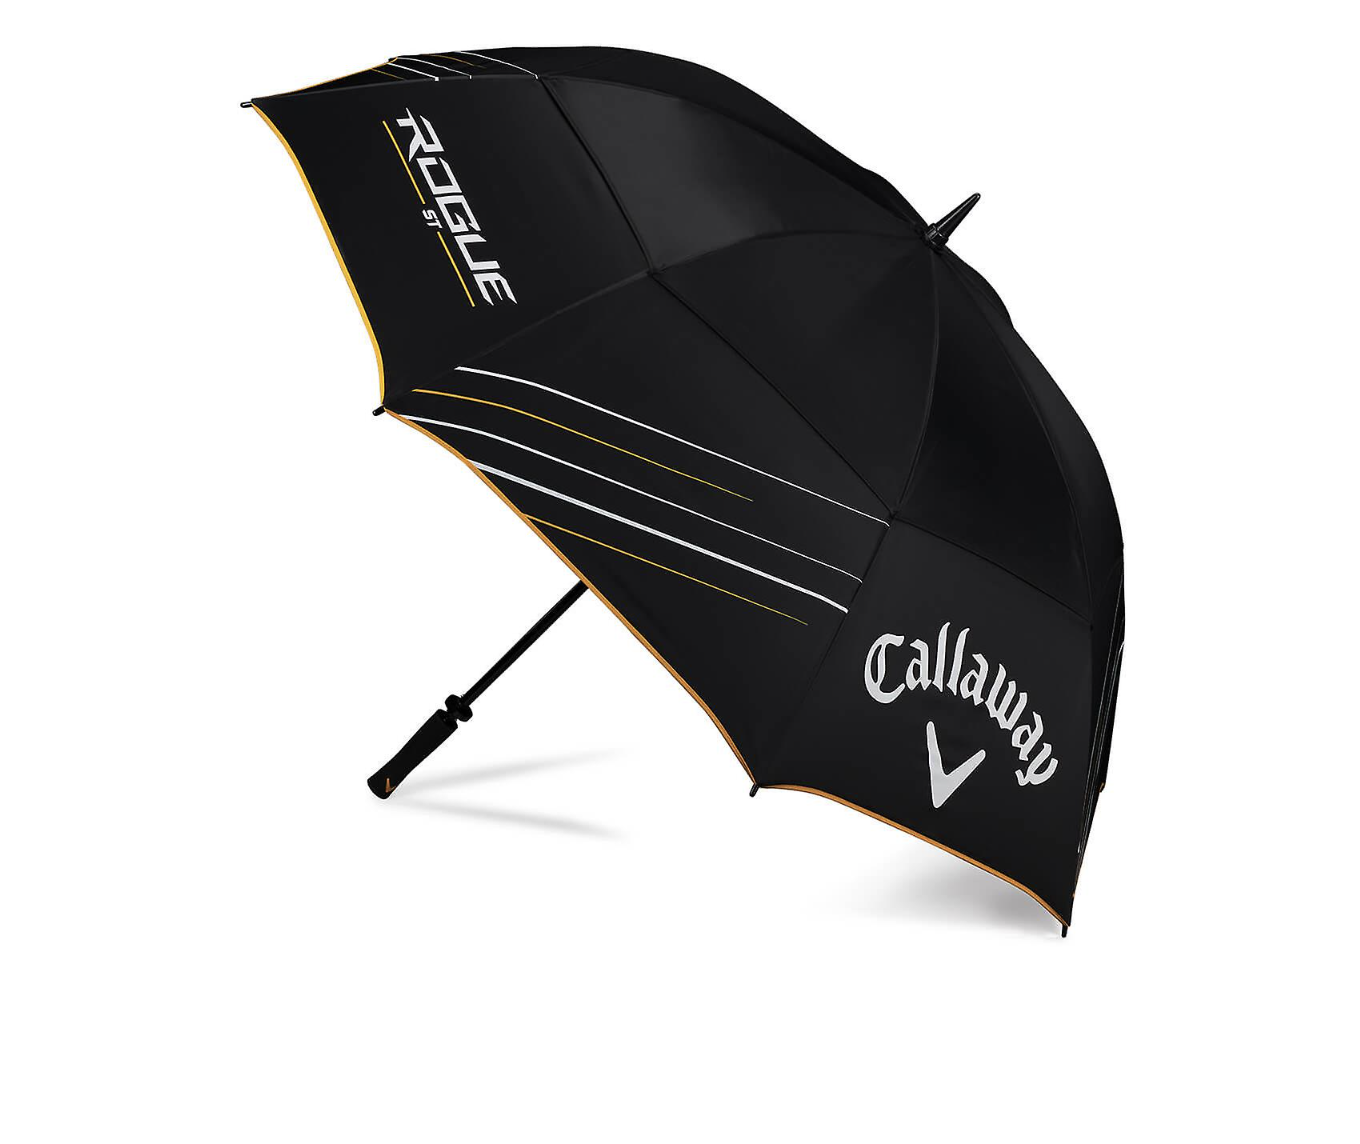 Callaway Shield 64" Umbrella Black/White/Gold